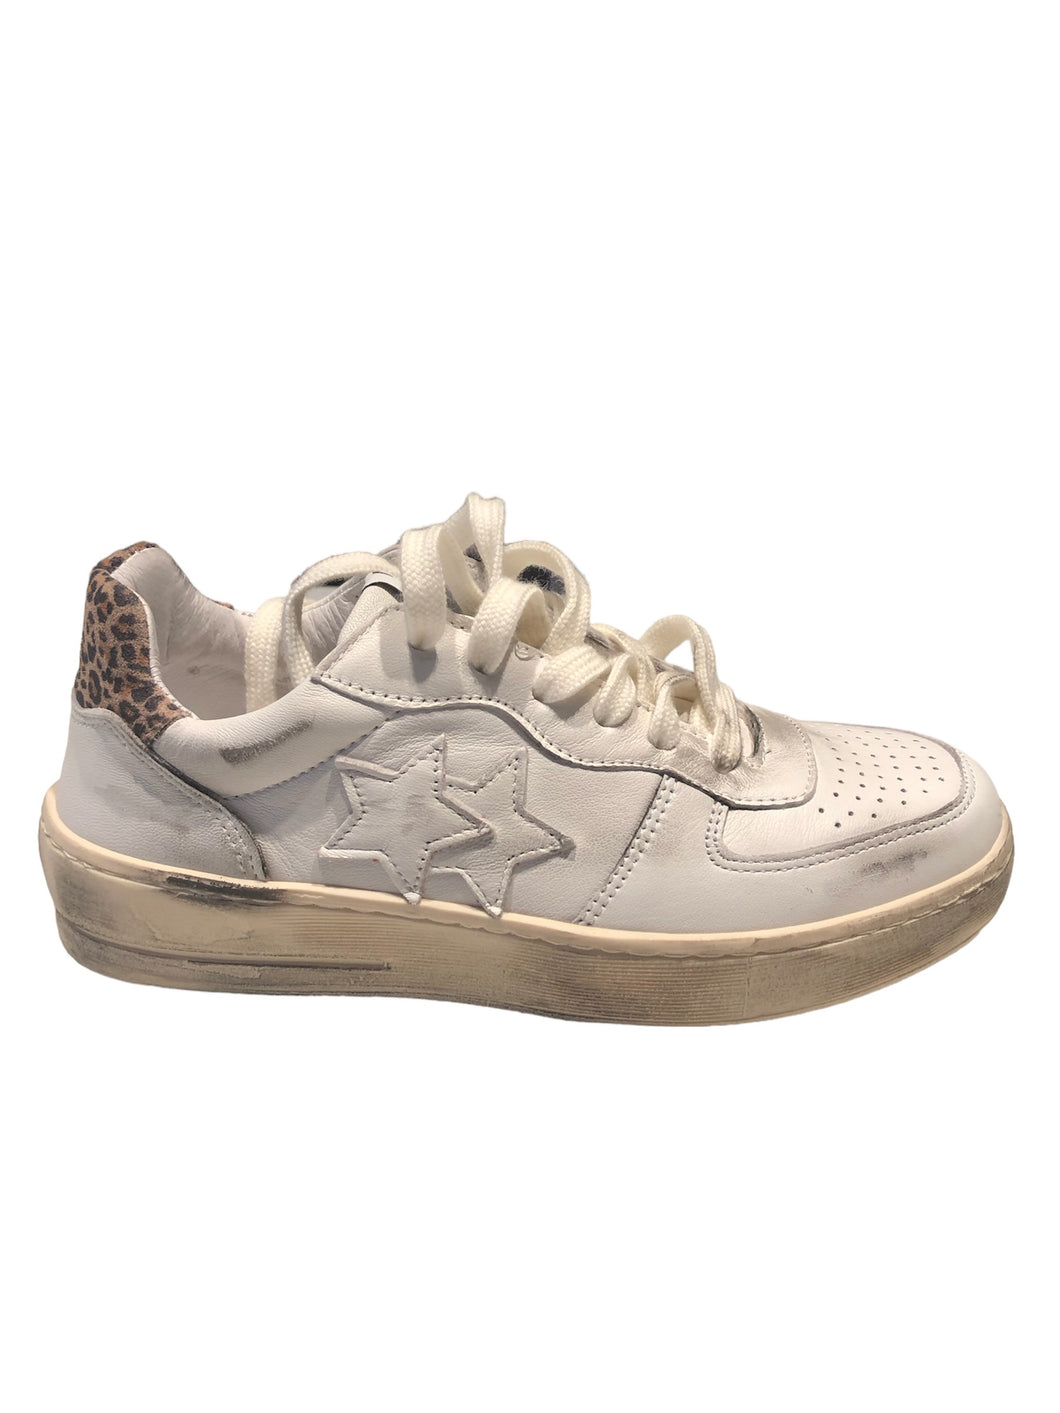 Sneakers padel in pelle bianca e dettagli leopardati con effetto 